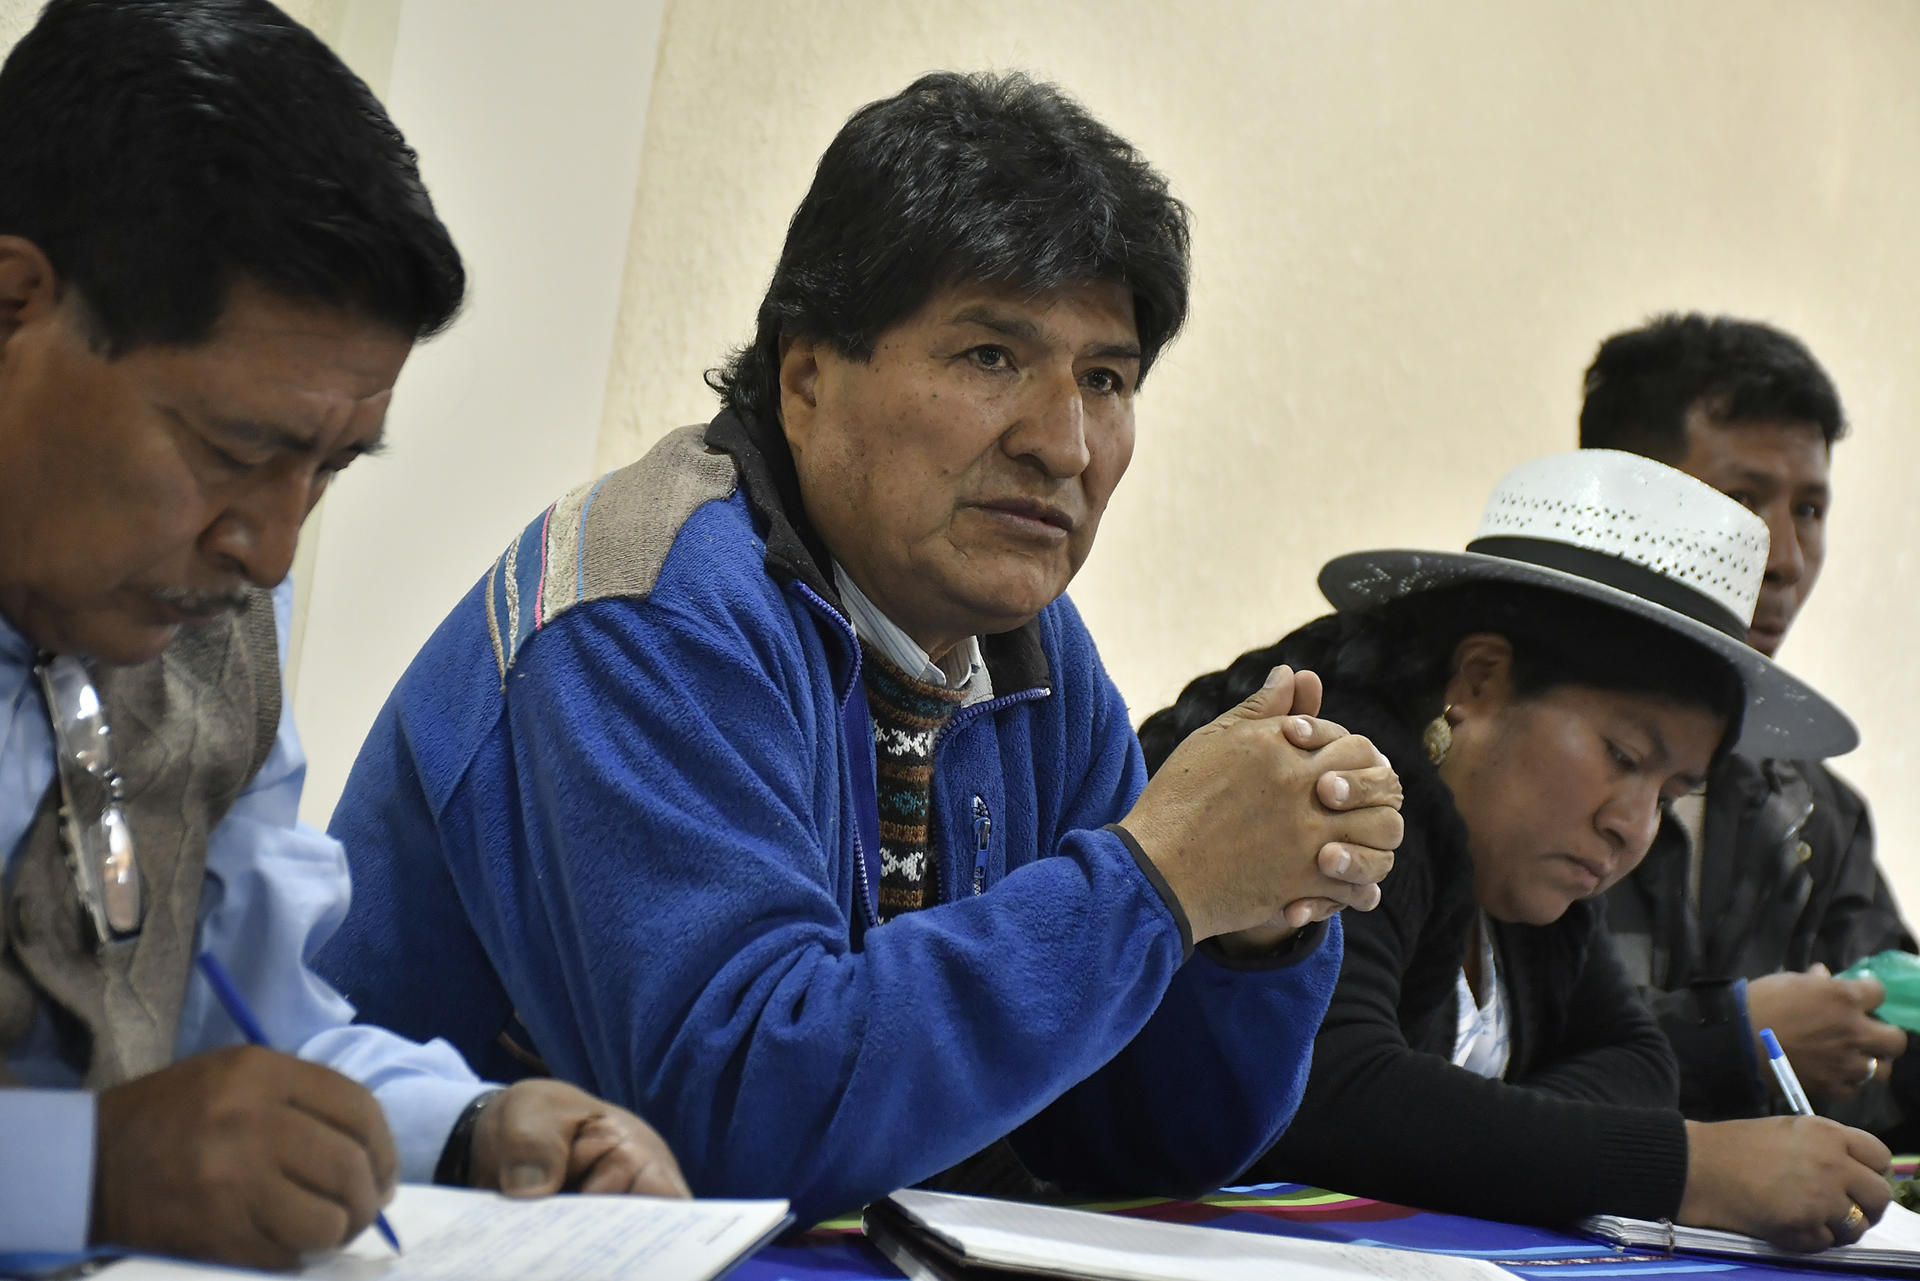 El ex presidente de Bolivia, Evo Morales , en una fotografía de archivo.EFE/ Jorge Abrego